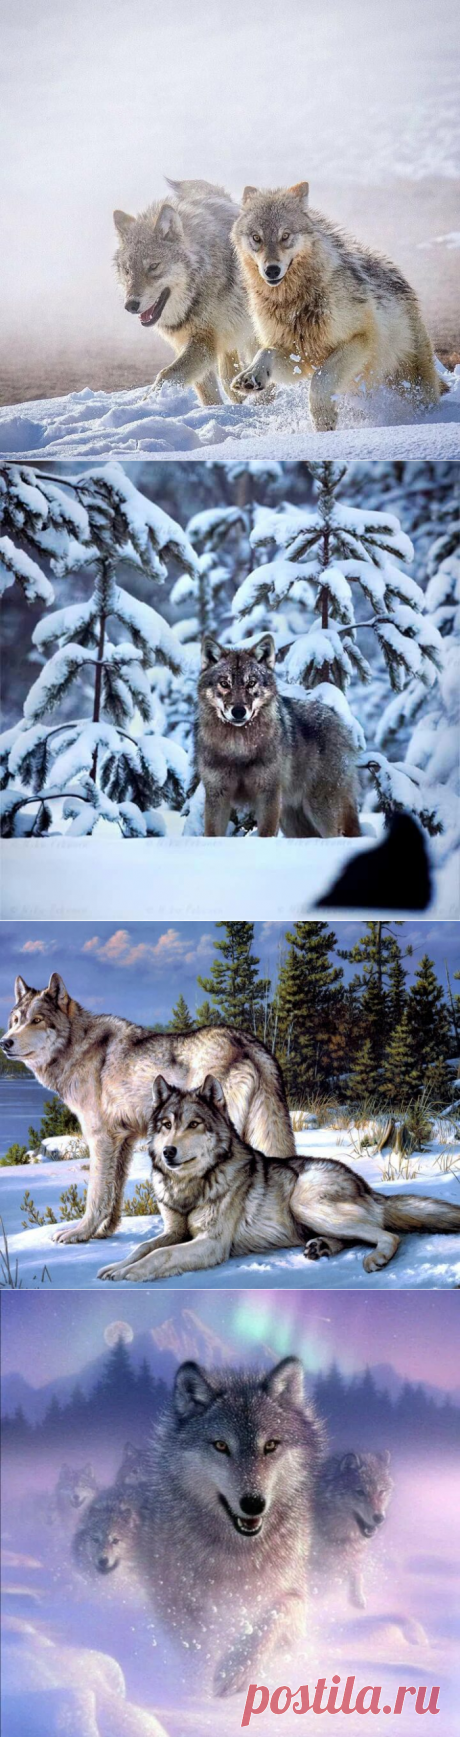 Образ жизни и питание волка зимой.